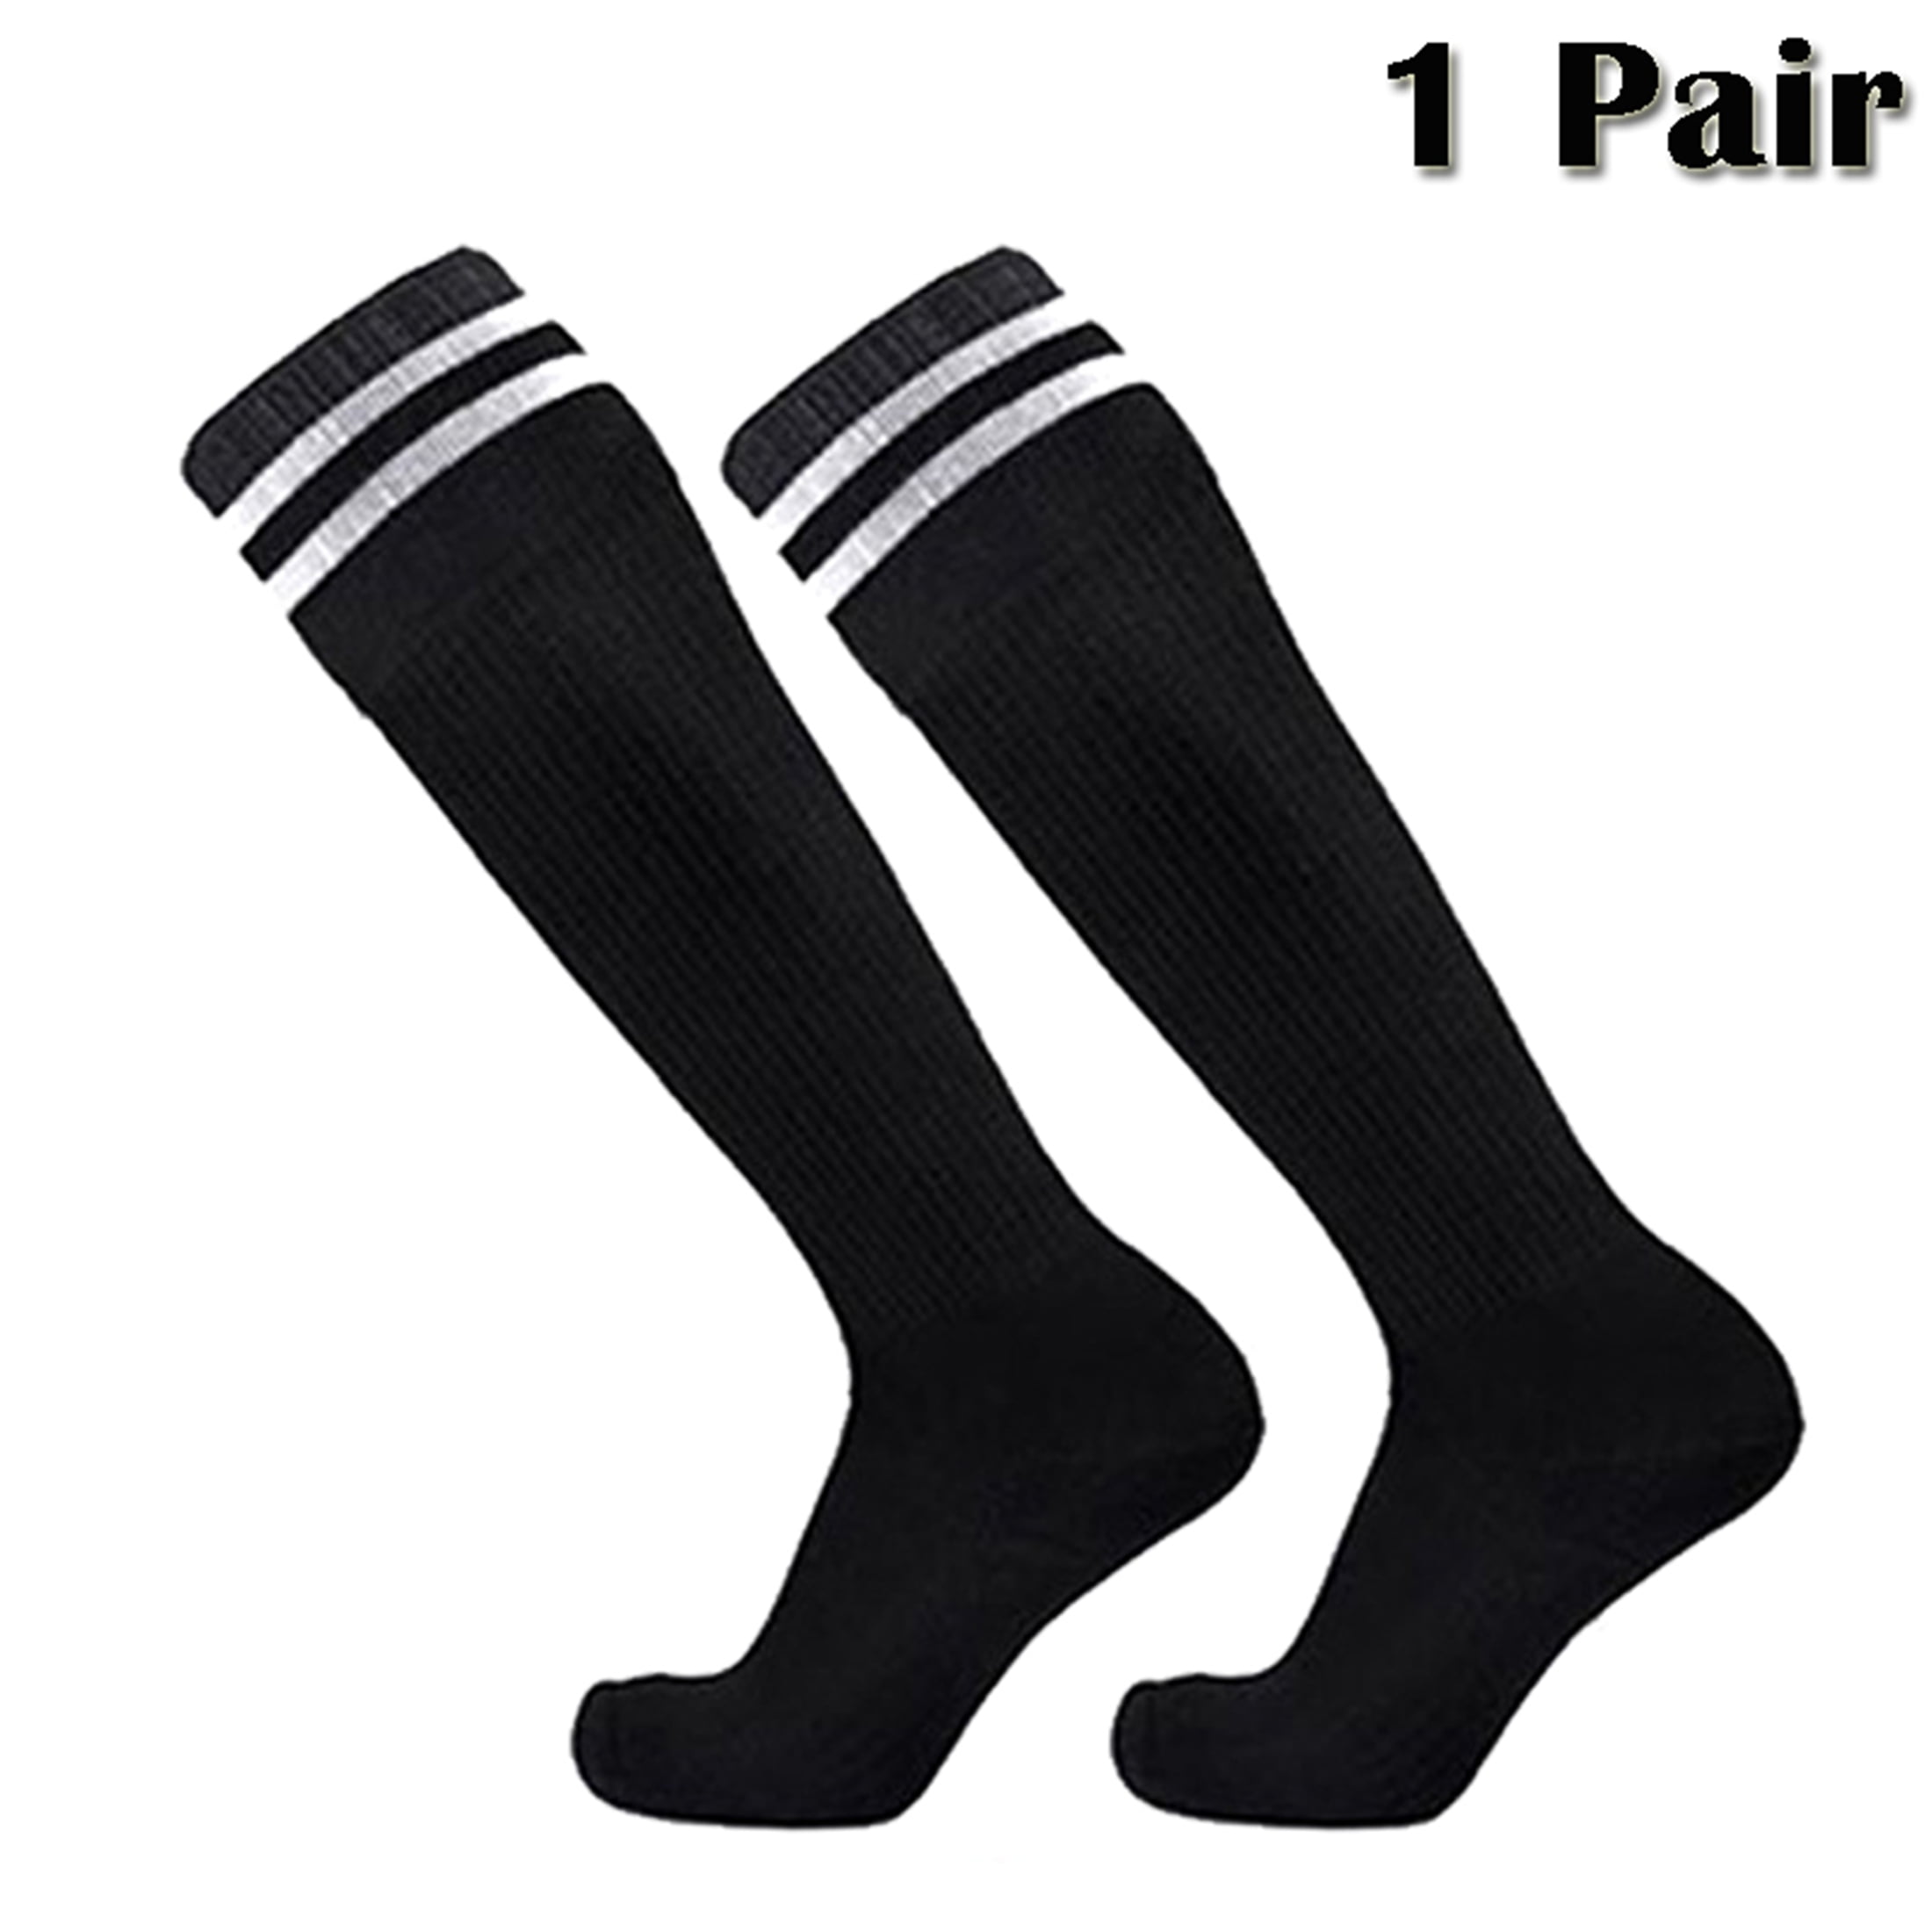 4 Pack Knee High Striped Tube Athletic Socks For Boys & Girls Kids Youth Soccer Socks 